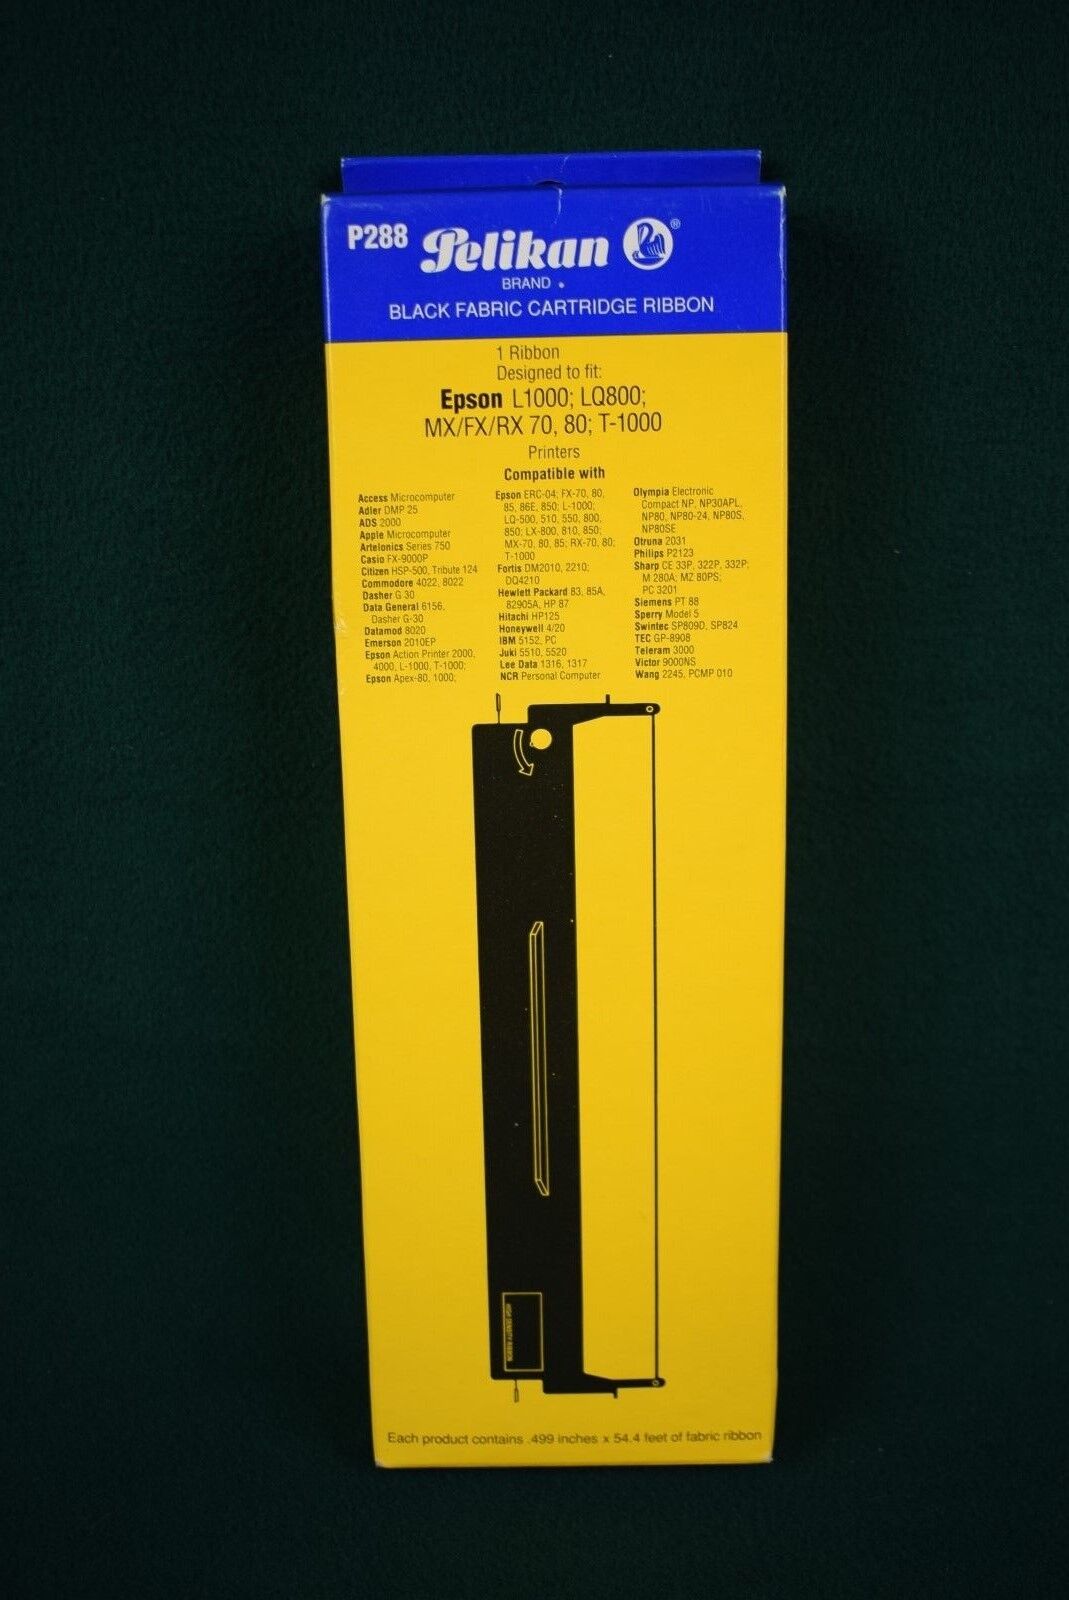 Peilkan Black Fabric Cartridge Ribbons - 3 Ribbons - P288 - NEW